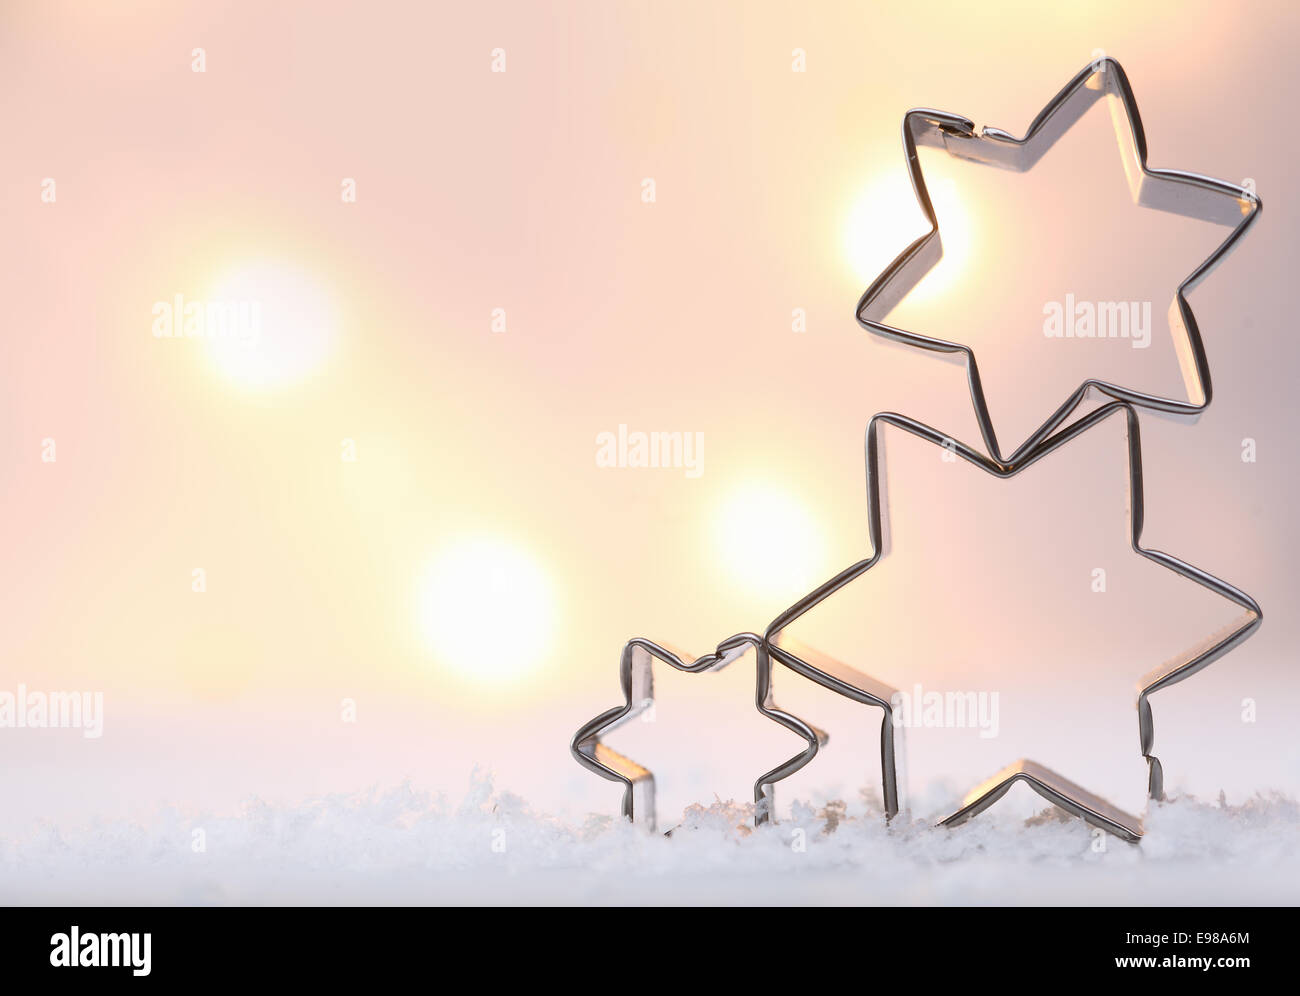 Stimmungsvolle Weihnachten Sterne Hintergrund mit drei Metall Sterne Ausstechformen übereinander auf Schnee gegen eine weiche ausgeglichen Stockfoto